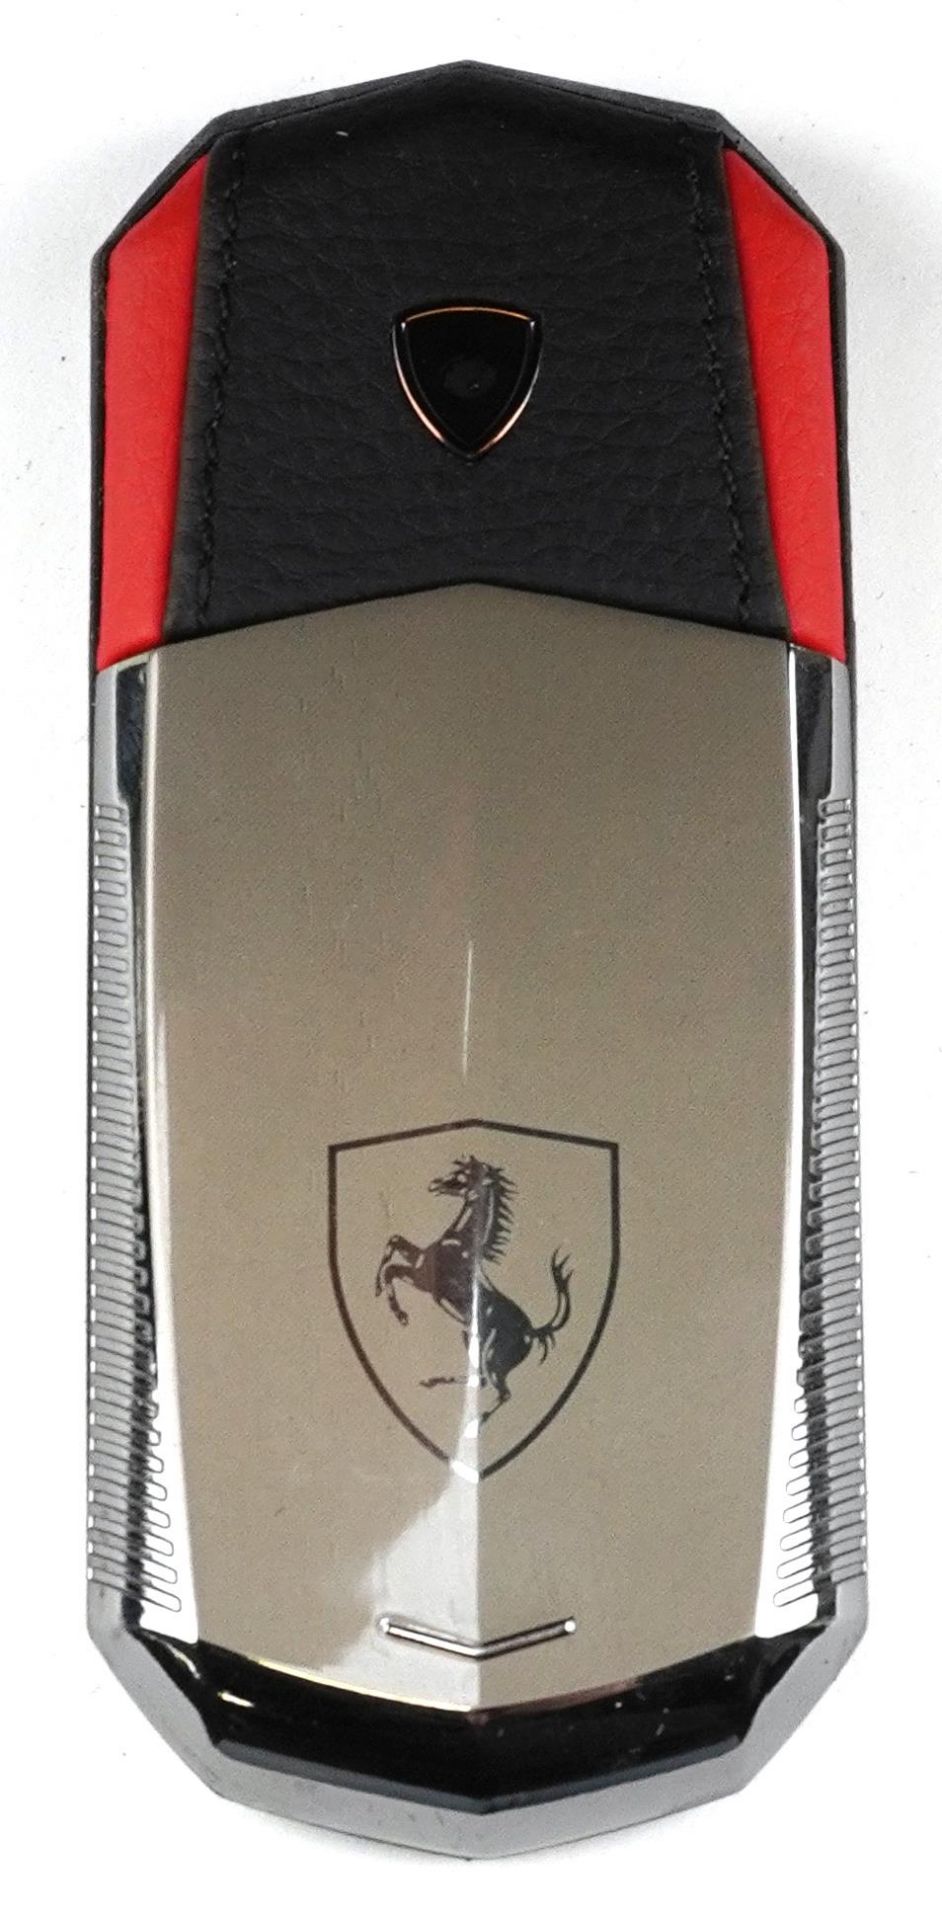 Cased Vertu Ferrari mobile phone and accessories - Bild 5 aus 6